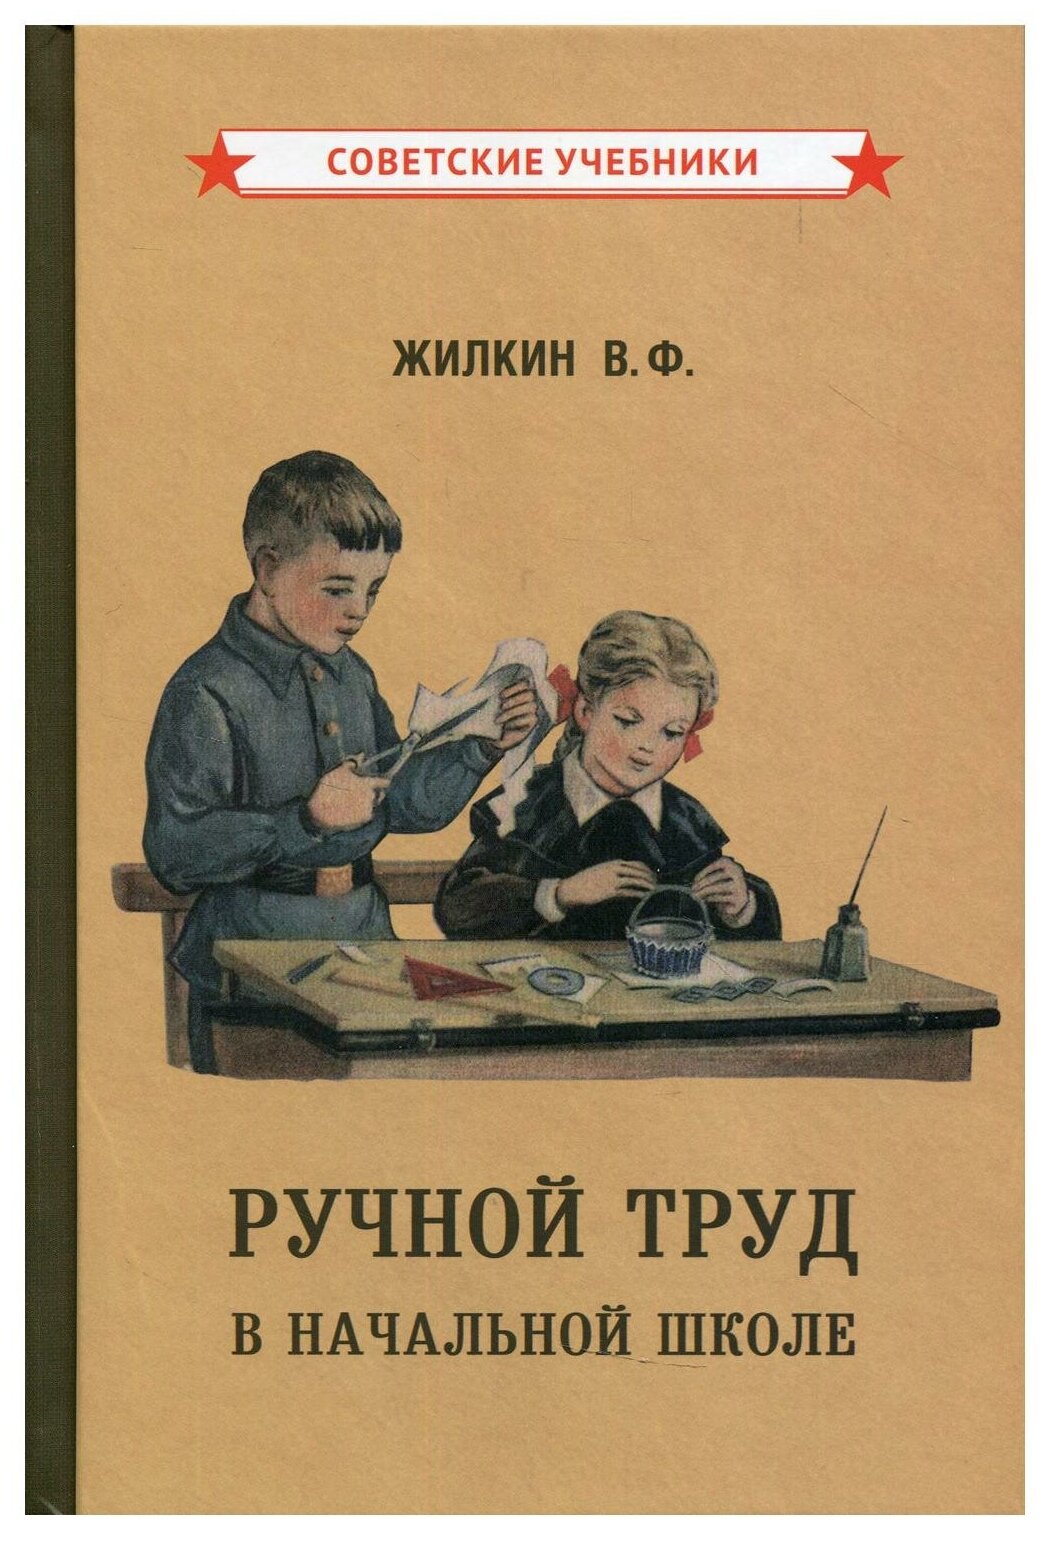 Ручной труд в начальной школе (1958) - фото №1